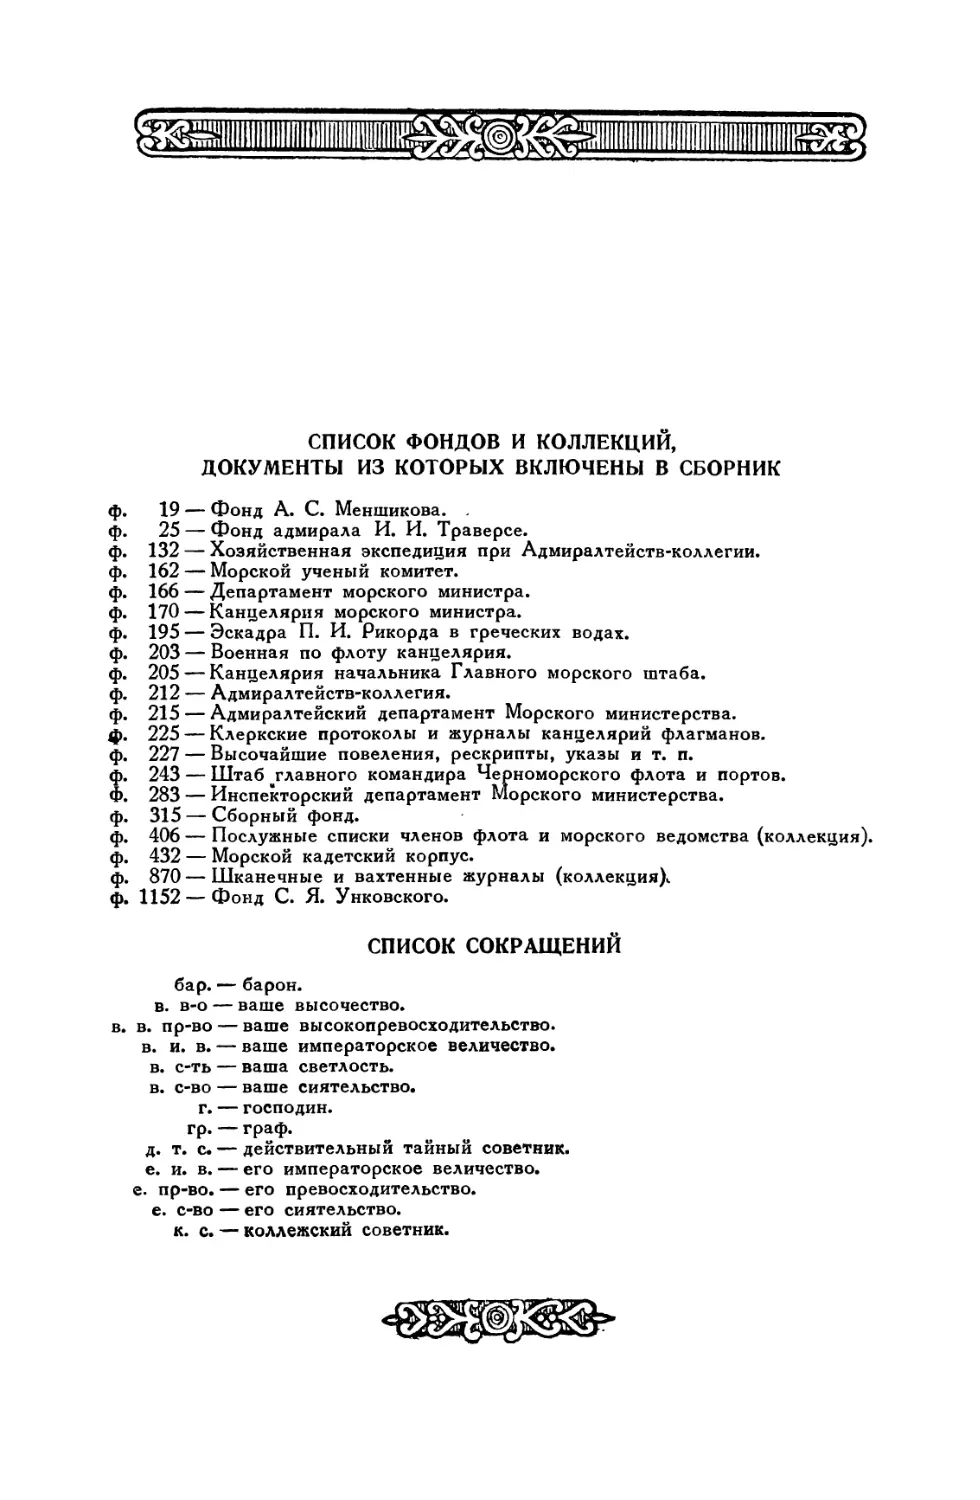 Список фондов и коллекций, документы из которых включены в сборник
Список сокращений